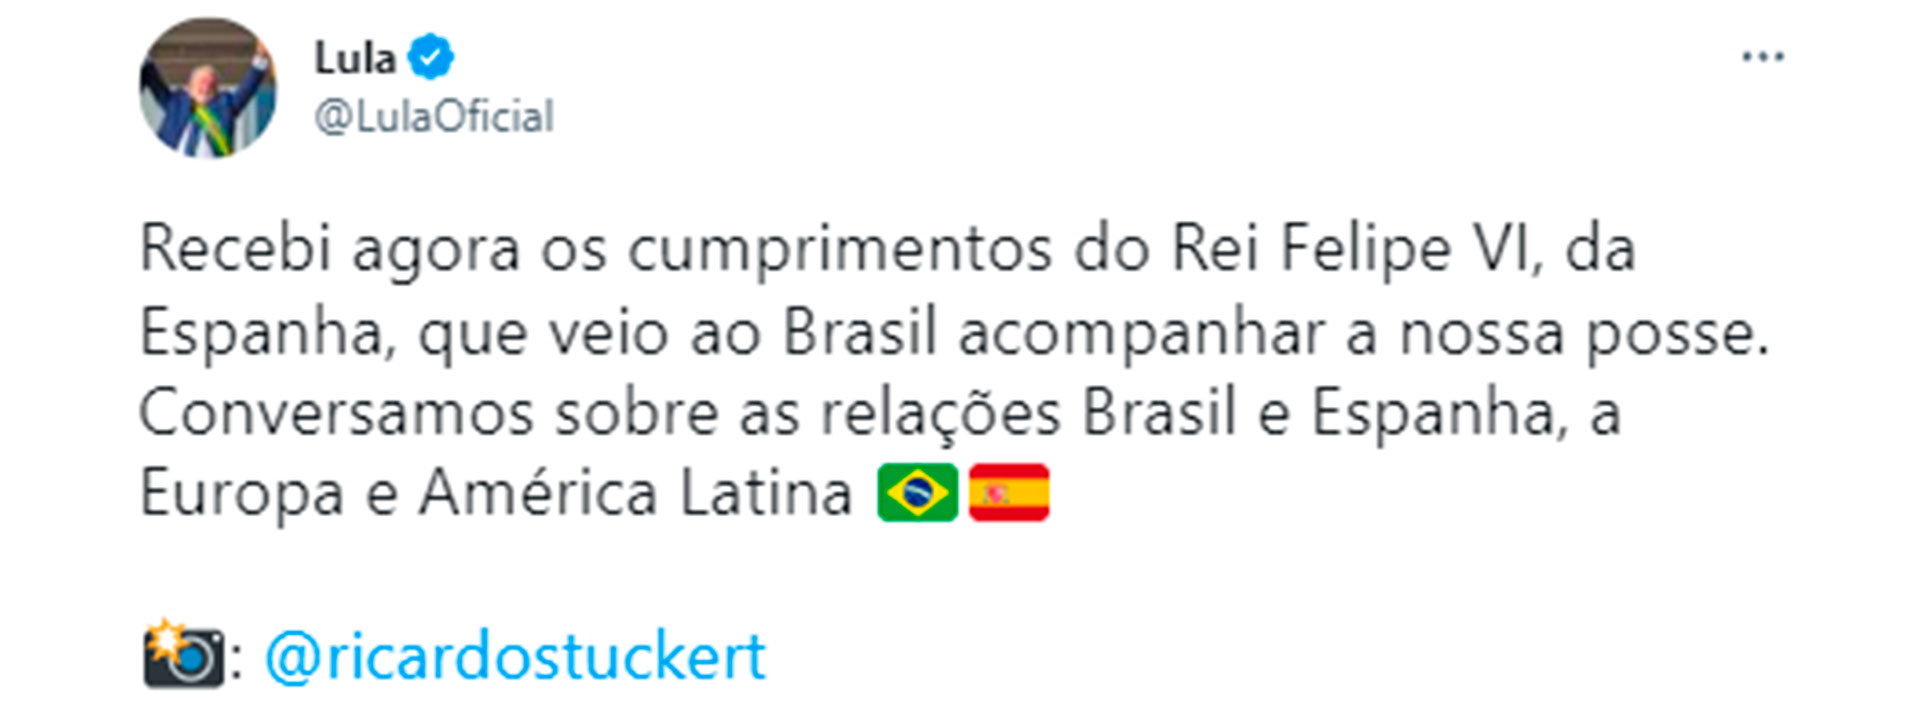 El tuit de Lula da Silva donde informó de su reunión bilateral con el Rey de España, Felipe VI.